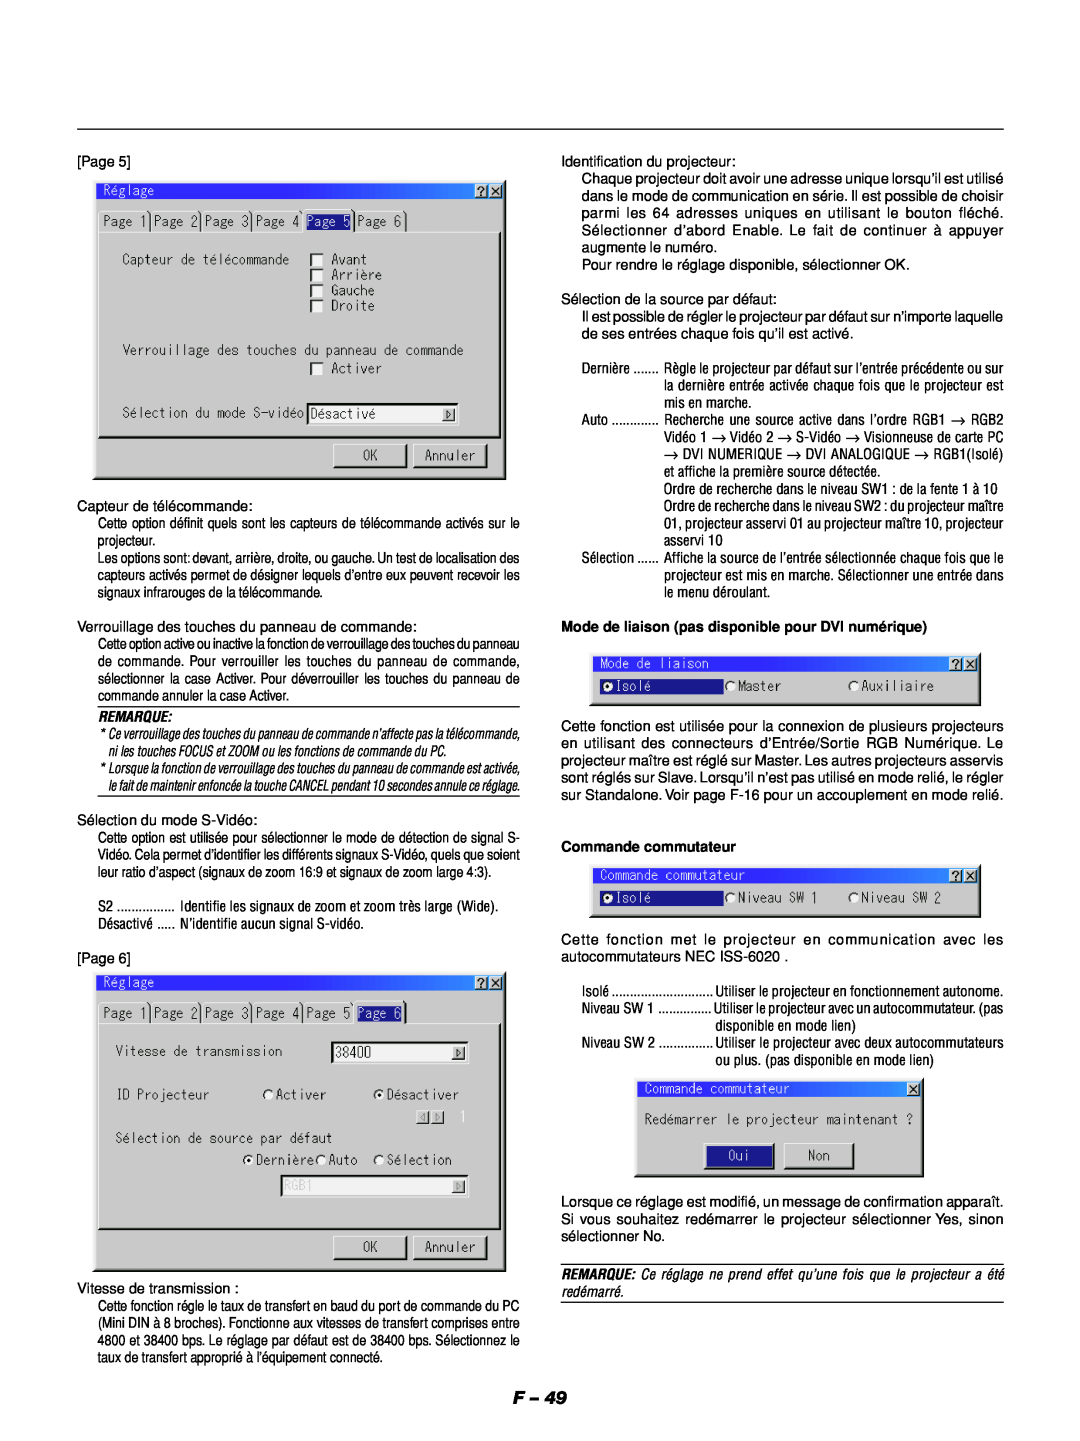 NEC GT1150 manuel dutilisation Remarque, Mode de liaison pas disponible pour DVI numérique, Commande commutateur 